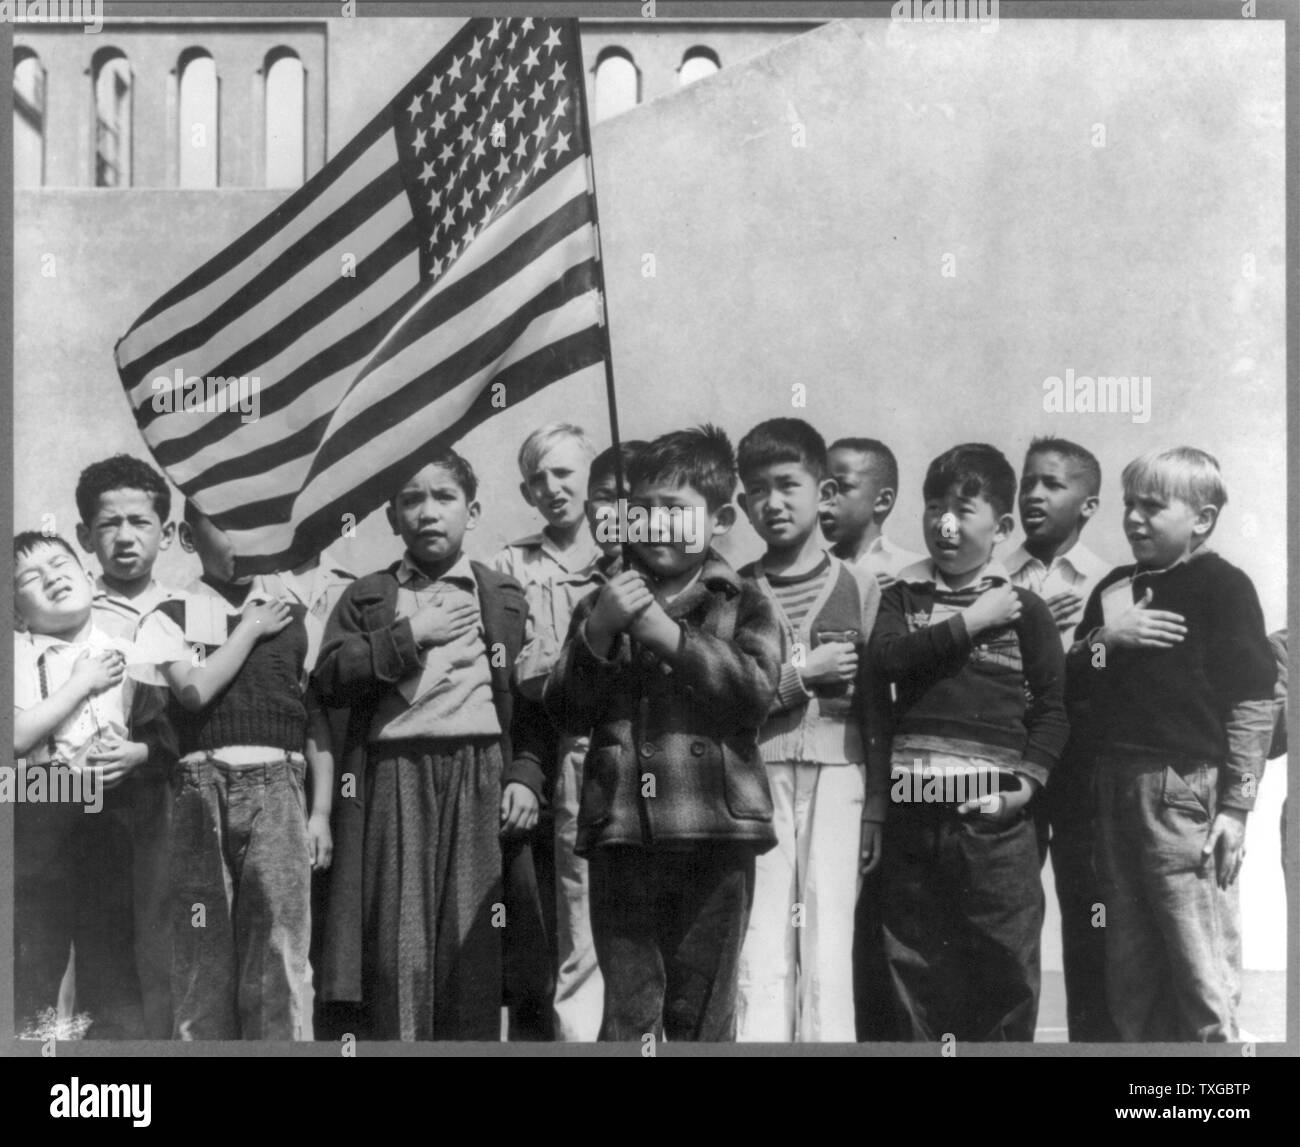 San Francisco, Californie, avril 1942. Les enfants à l'école publique de Weill pour le soi-disant règlement international et notamment de nombreux Américains, saluant le drapeau. Ils comprennent les personnes évacuées d'origine japonaise qui seront logés dans les centres d'autorité à la réinstallation de la guerre pour la durée Banque D'Images